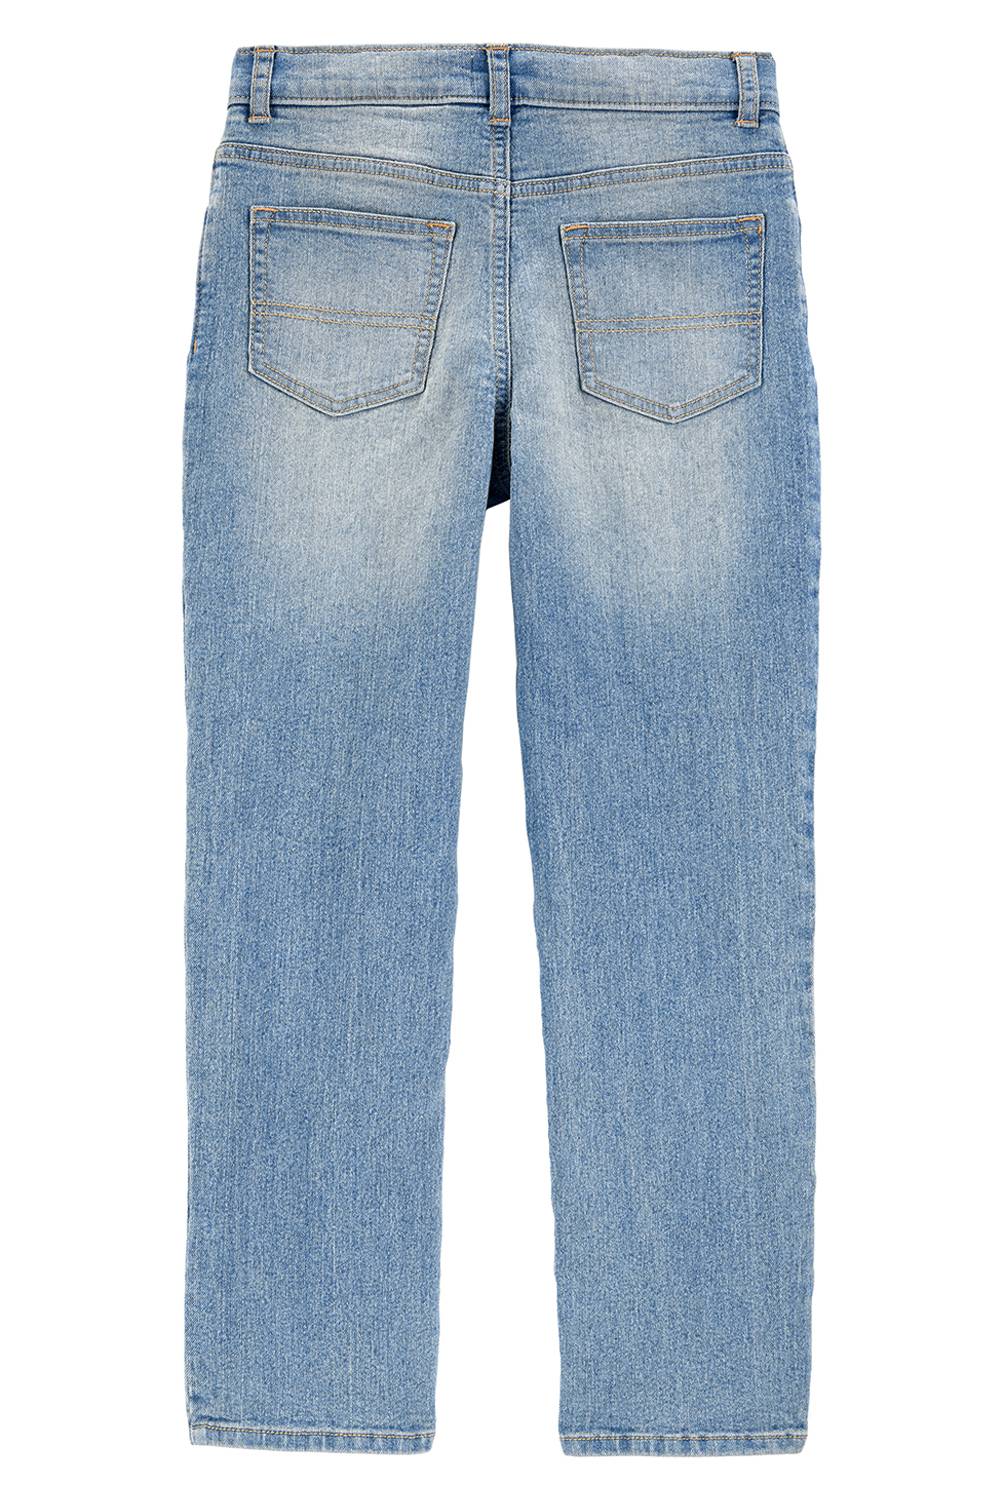 OSHKOSH - Oshkosh Jeans Elasticados Slim Fit  Niño